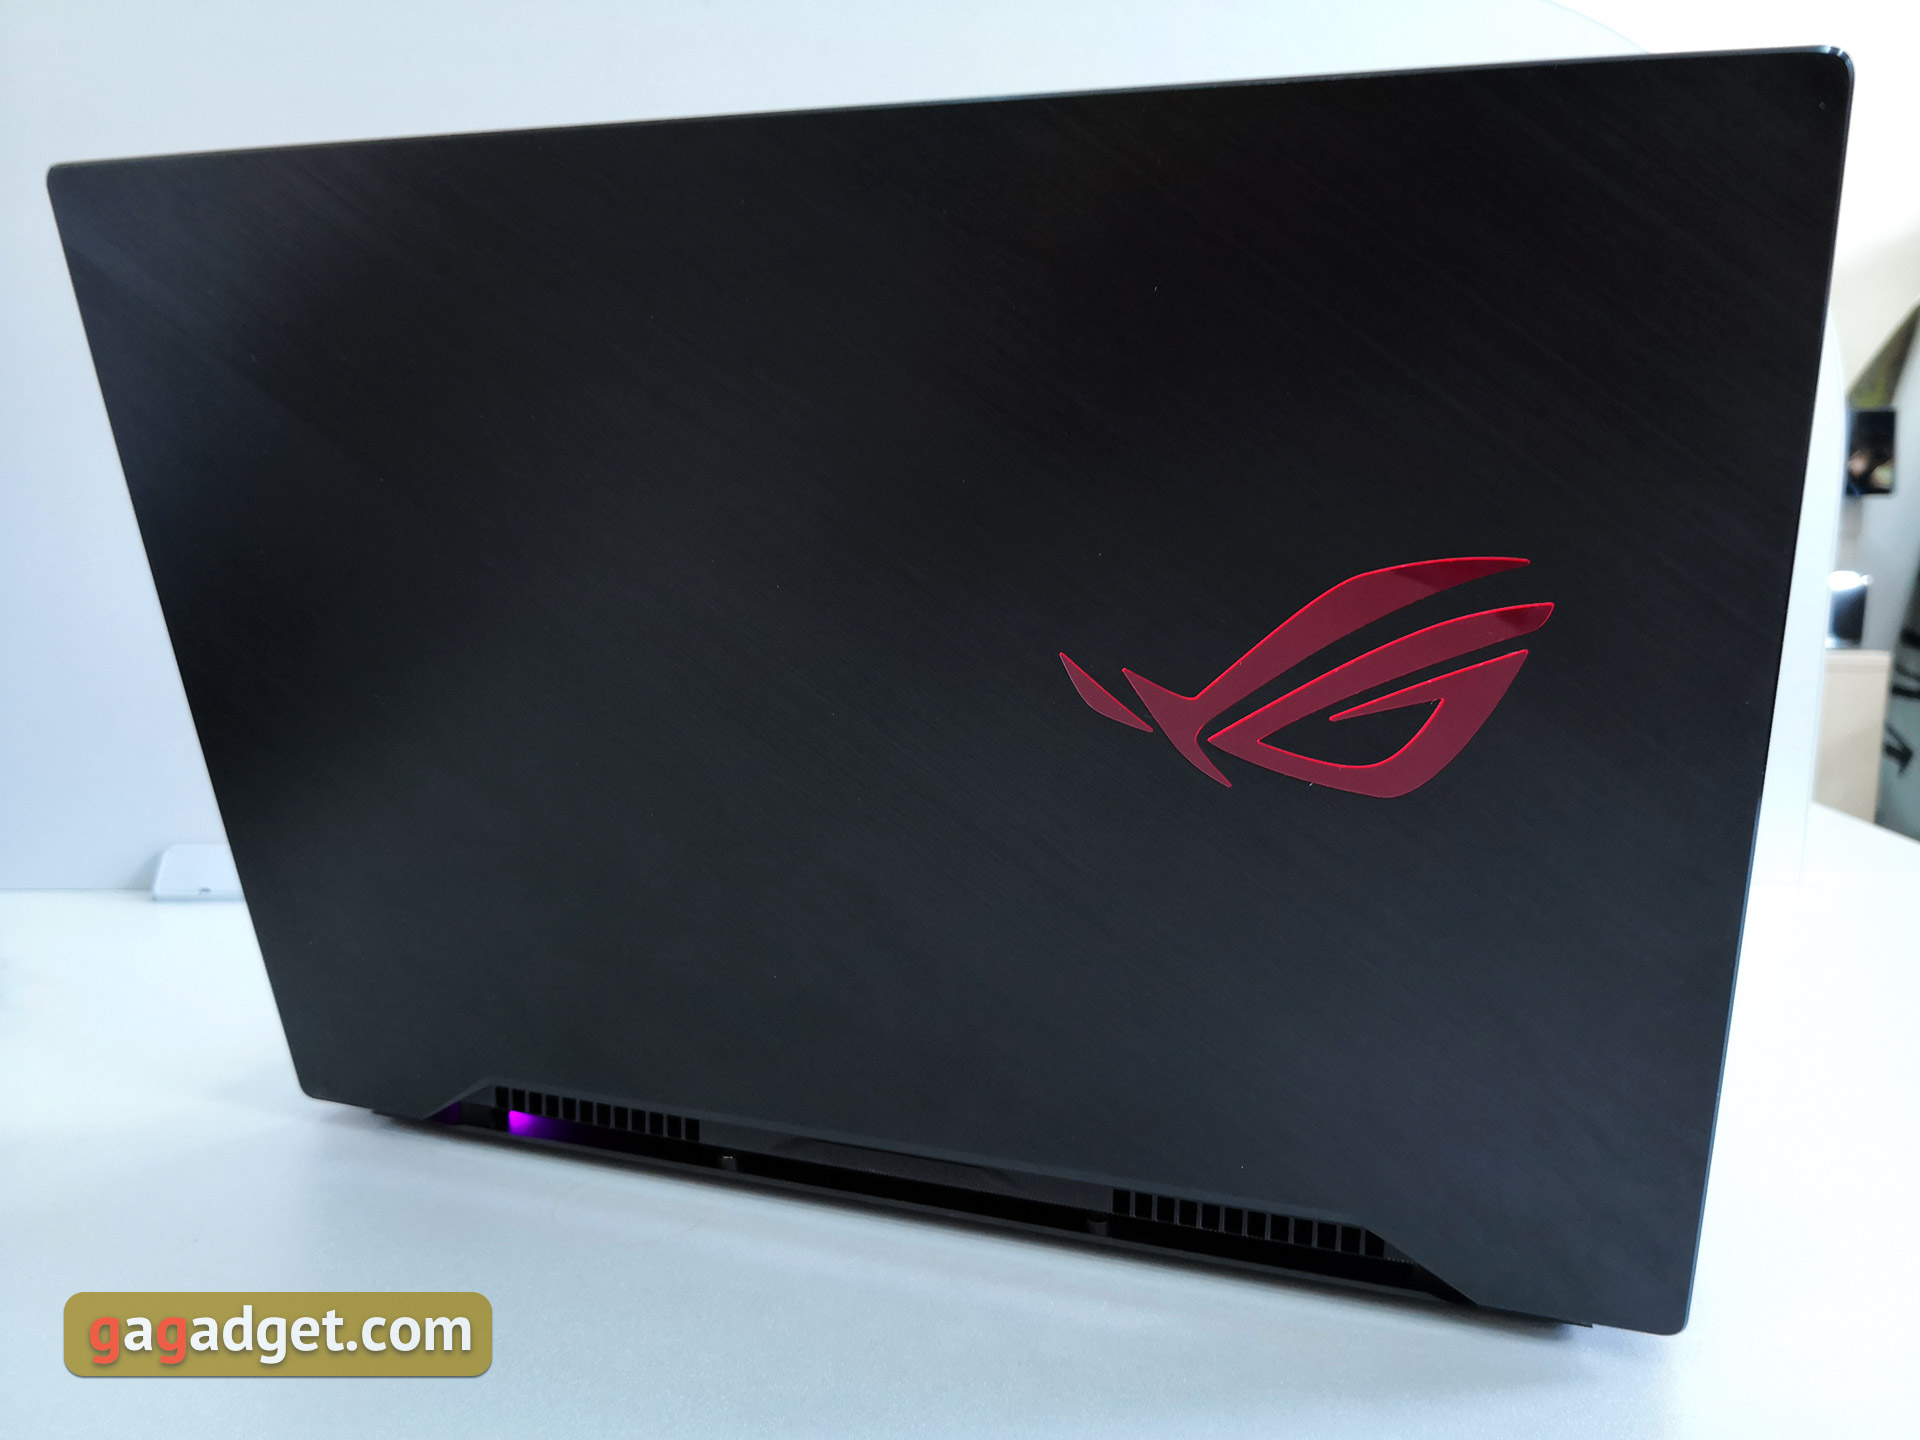 Recenzja ASUS ROG Zephyrus S GX502GW: wydajny laptop do gier z GeForce RTX 2070 o wadze zaledwie 2 kg-6